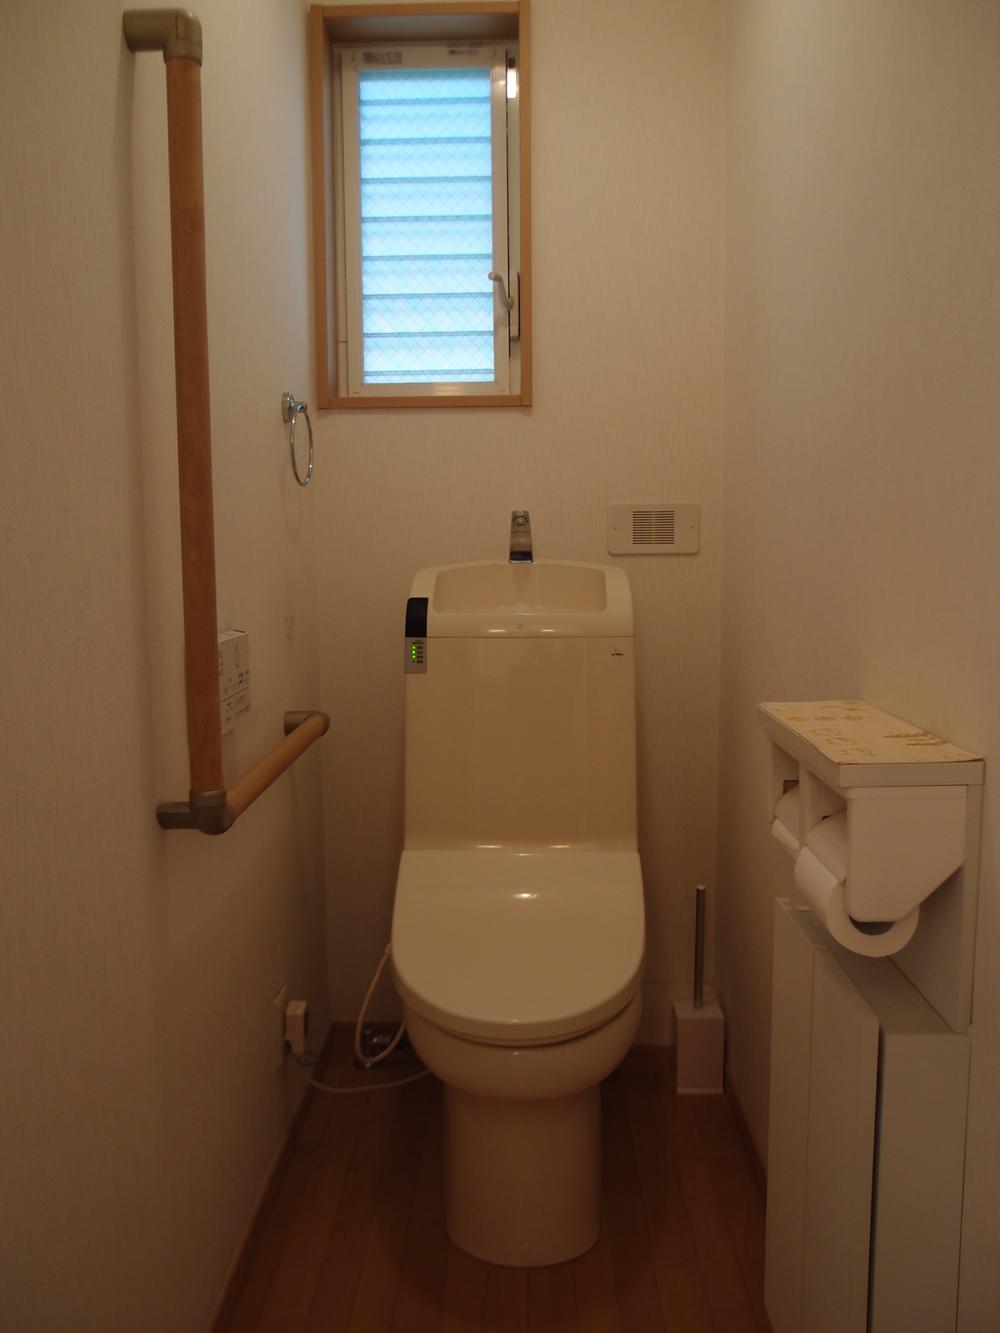 Toilet. Second floor toilet facilities